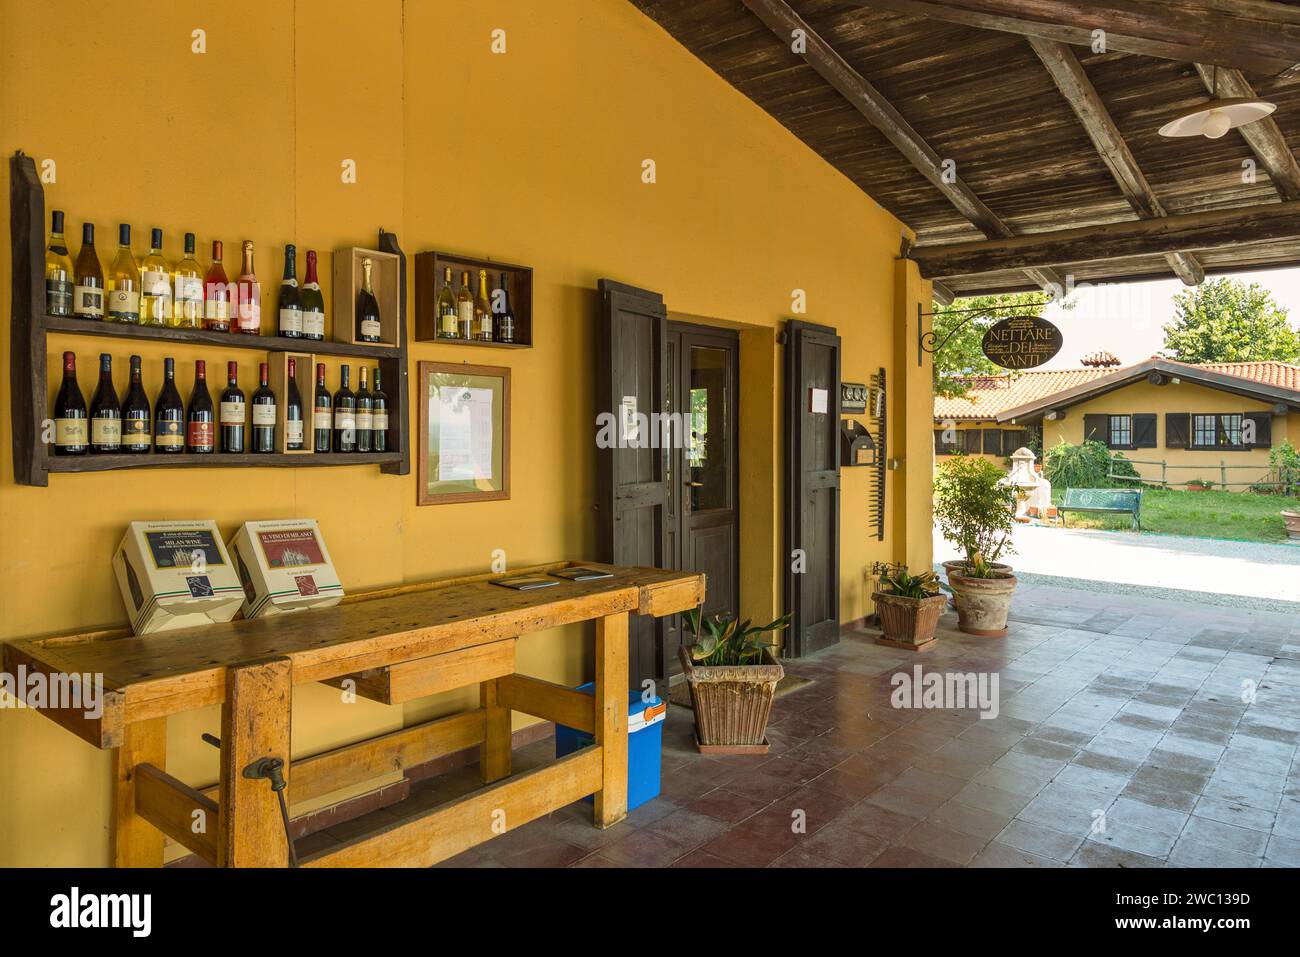 Italie, Lombardie, San Colombano al Lambro, bouteilles de vin local dans la cave Nettare Dei Santi Banque D'Images